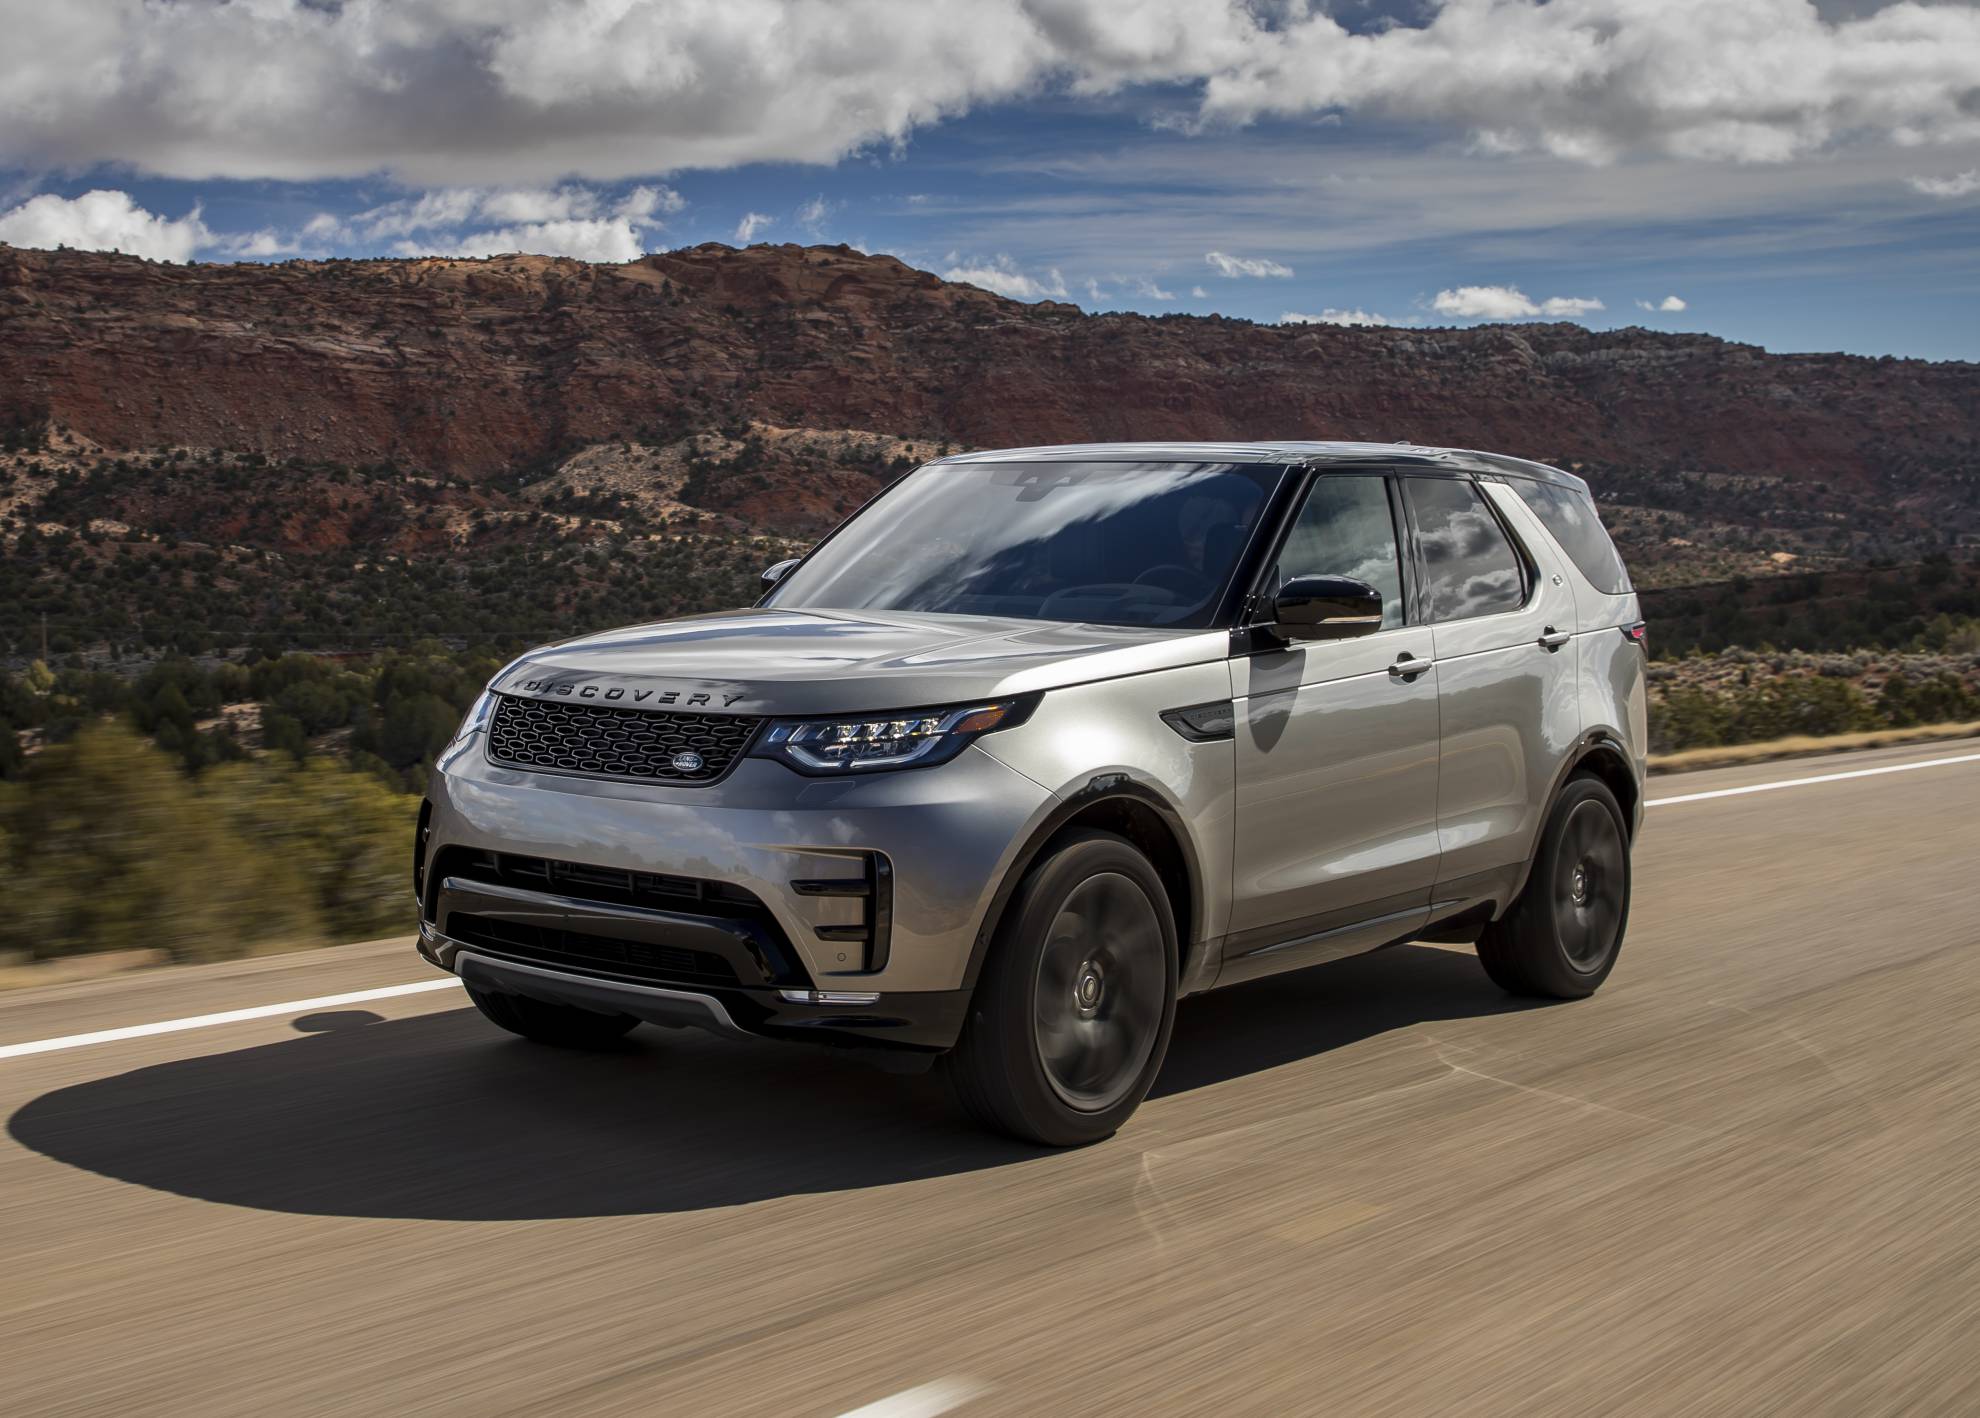 Entra en el territorio Discovery: el SUV más versátil de Land Rover